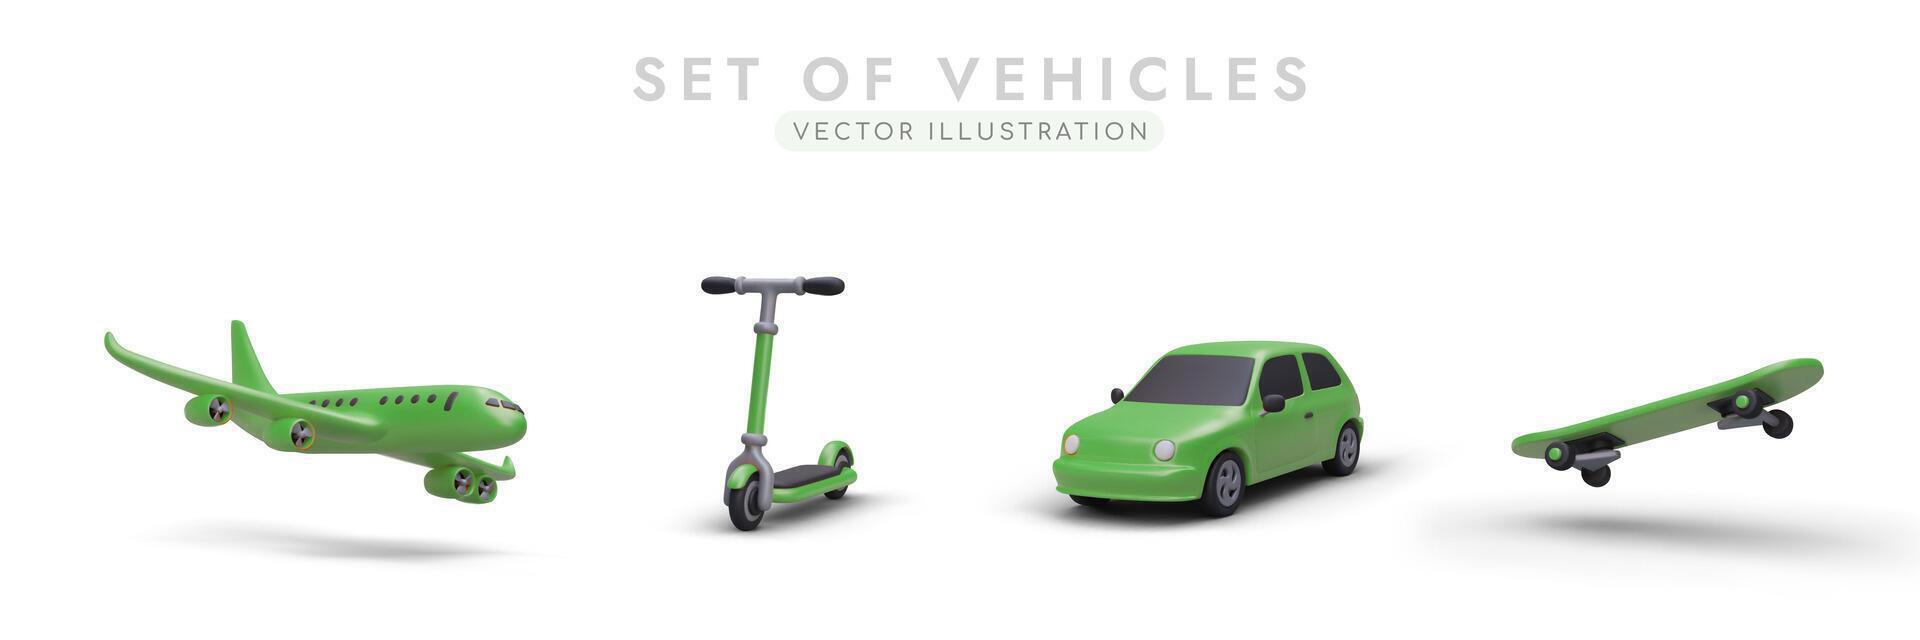 impostato di vettore 3d immagini di verde colore. realistico aereo, scooter, macchina, skateboard con ombre